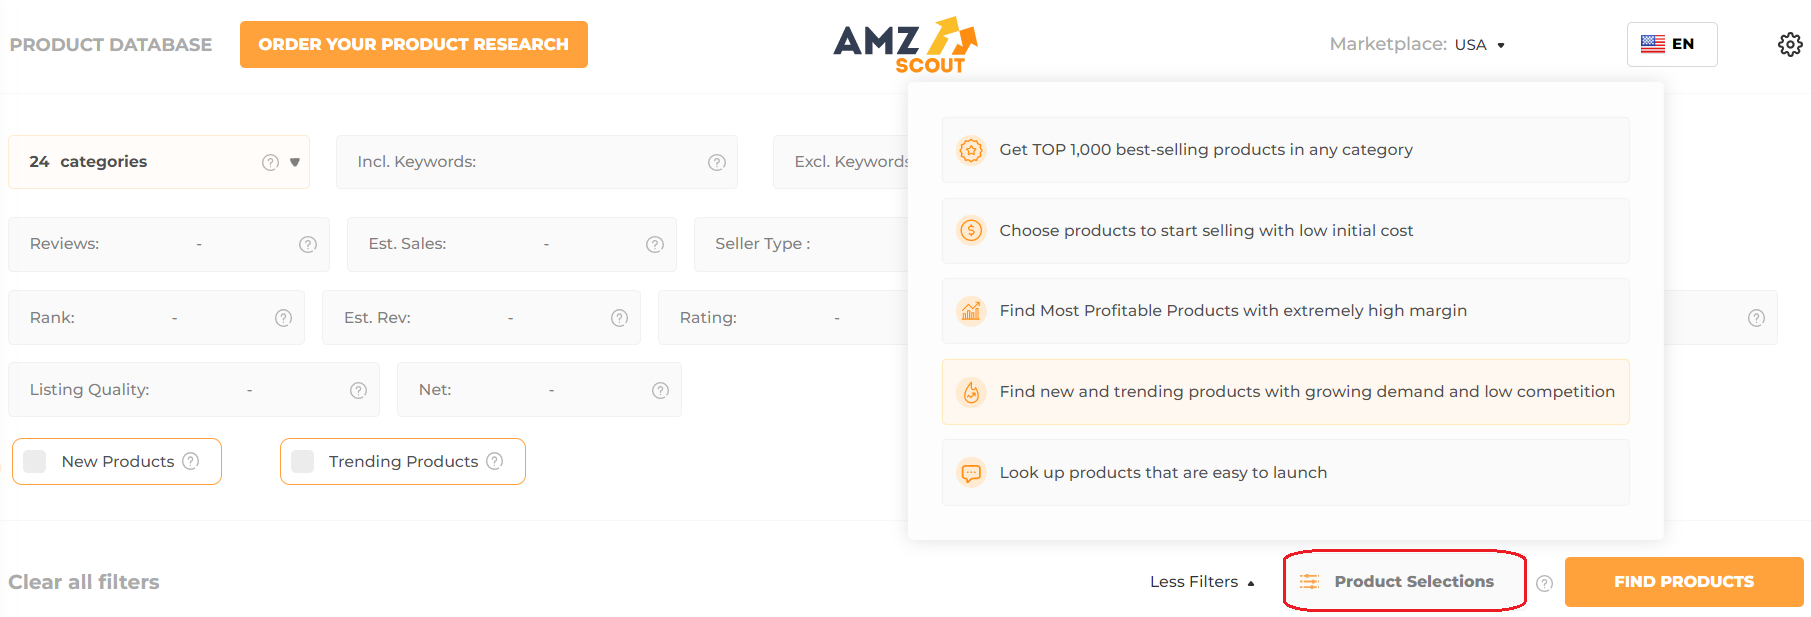 Uso de selecciones de productos en la base de datos de productos de AMZScout